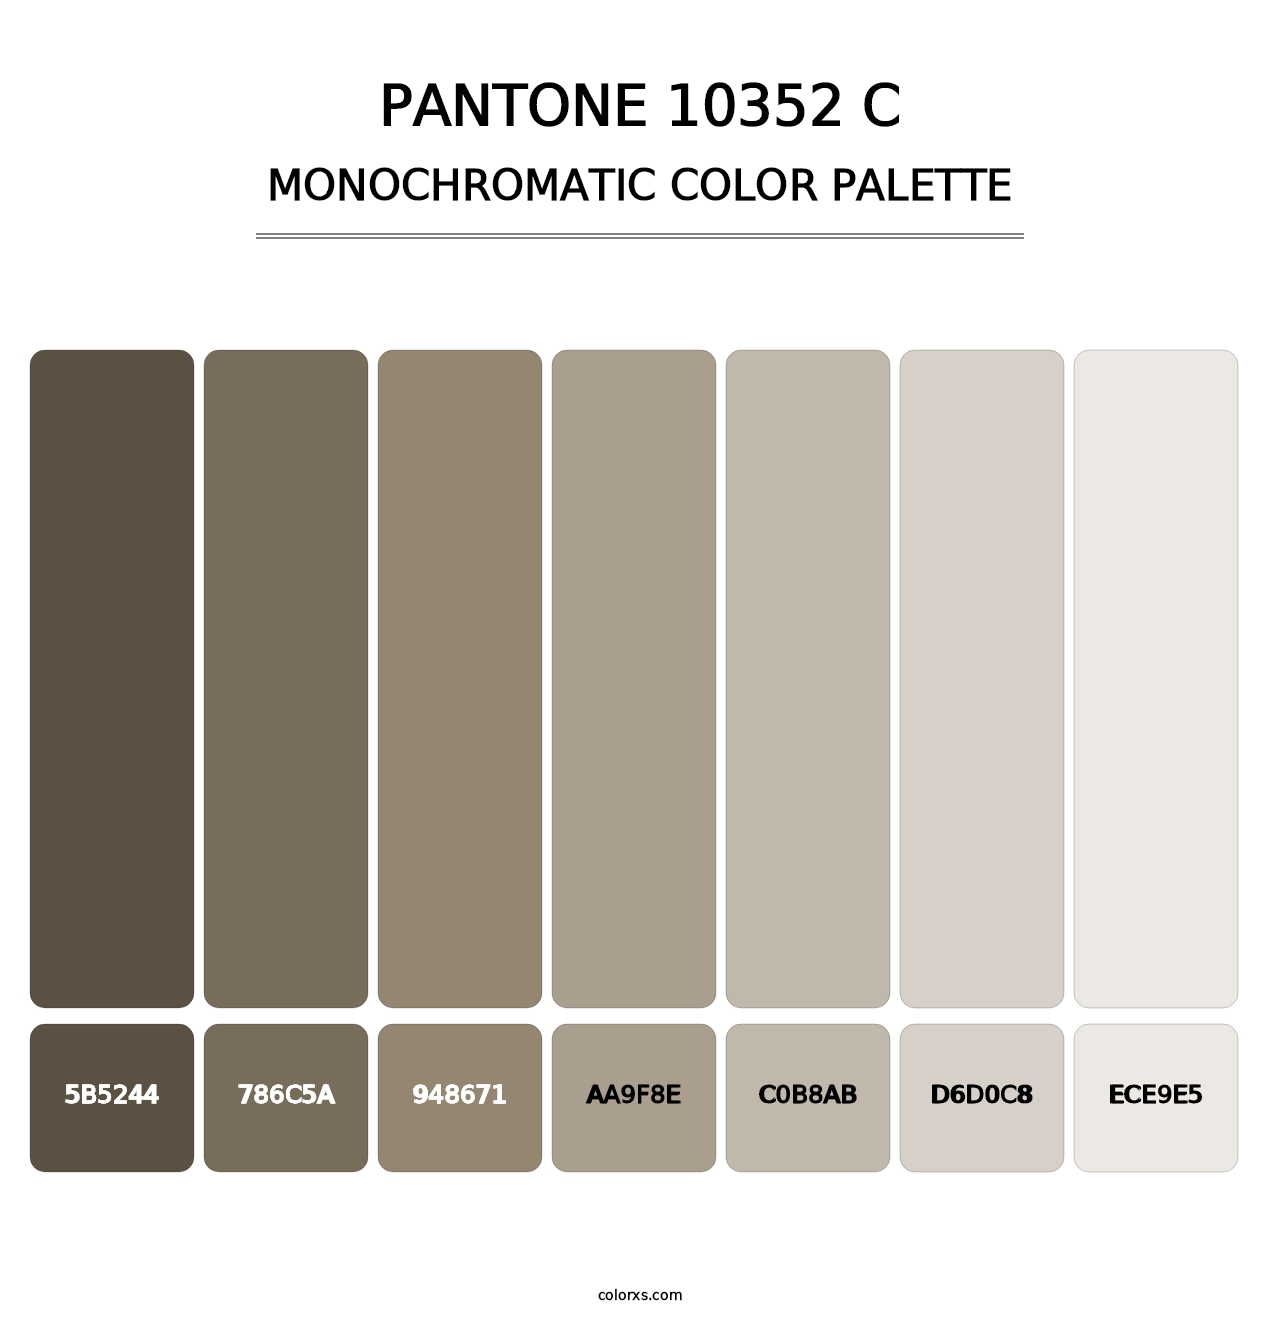 PANTONE 10352 C - Monochromatic Color Palette